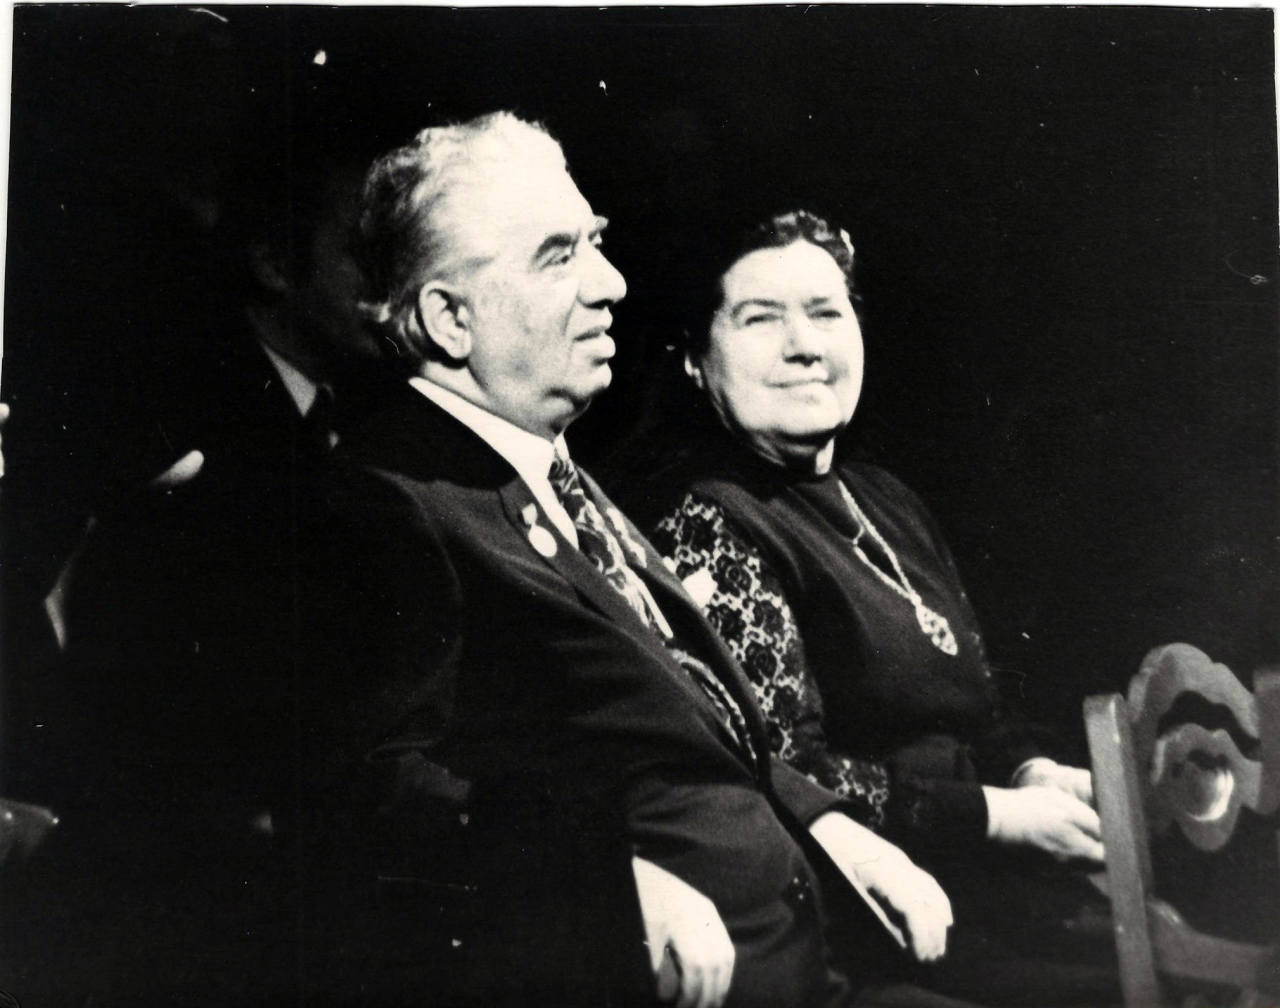 Լուսանկար. Ա. Խաչատրյանը կնոջ՝ Ն. Մակարովայի հետ Լենինգրադի Կիրովի անվ. օպերային թատրոնի հանդիսասրահում